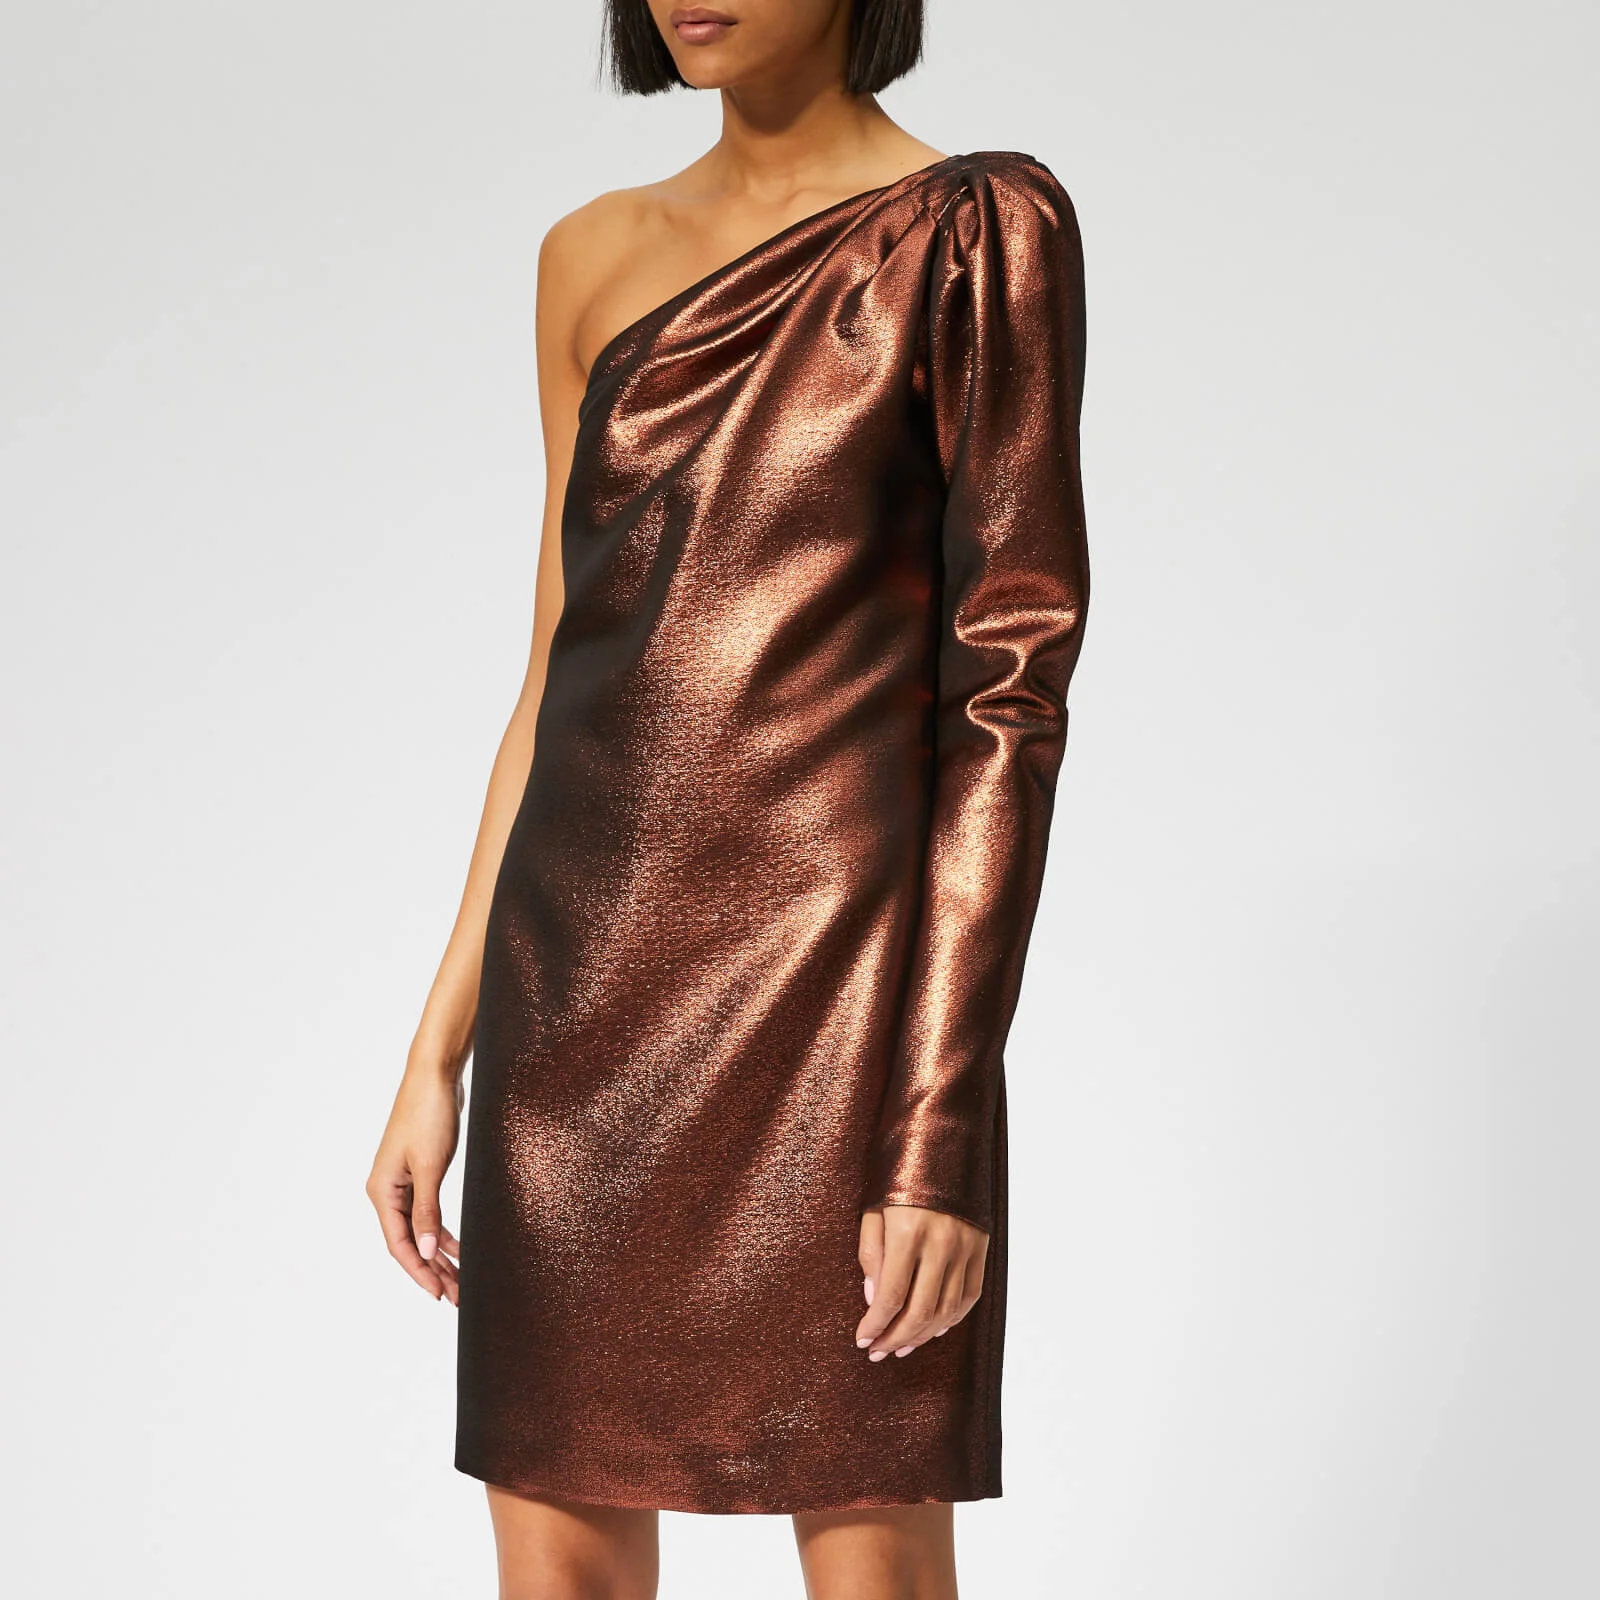 Victoria, Victoria Beckham Women's One Shoulder Twist Dress - Copper Image 1